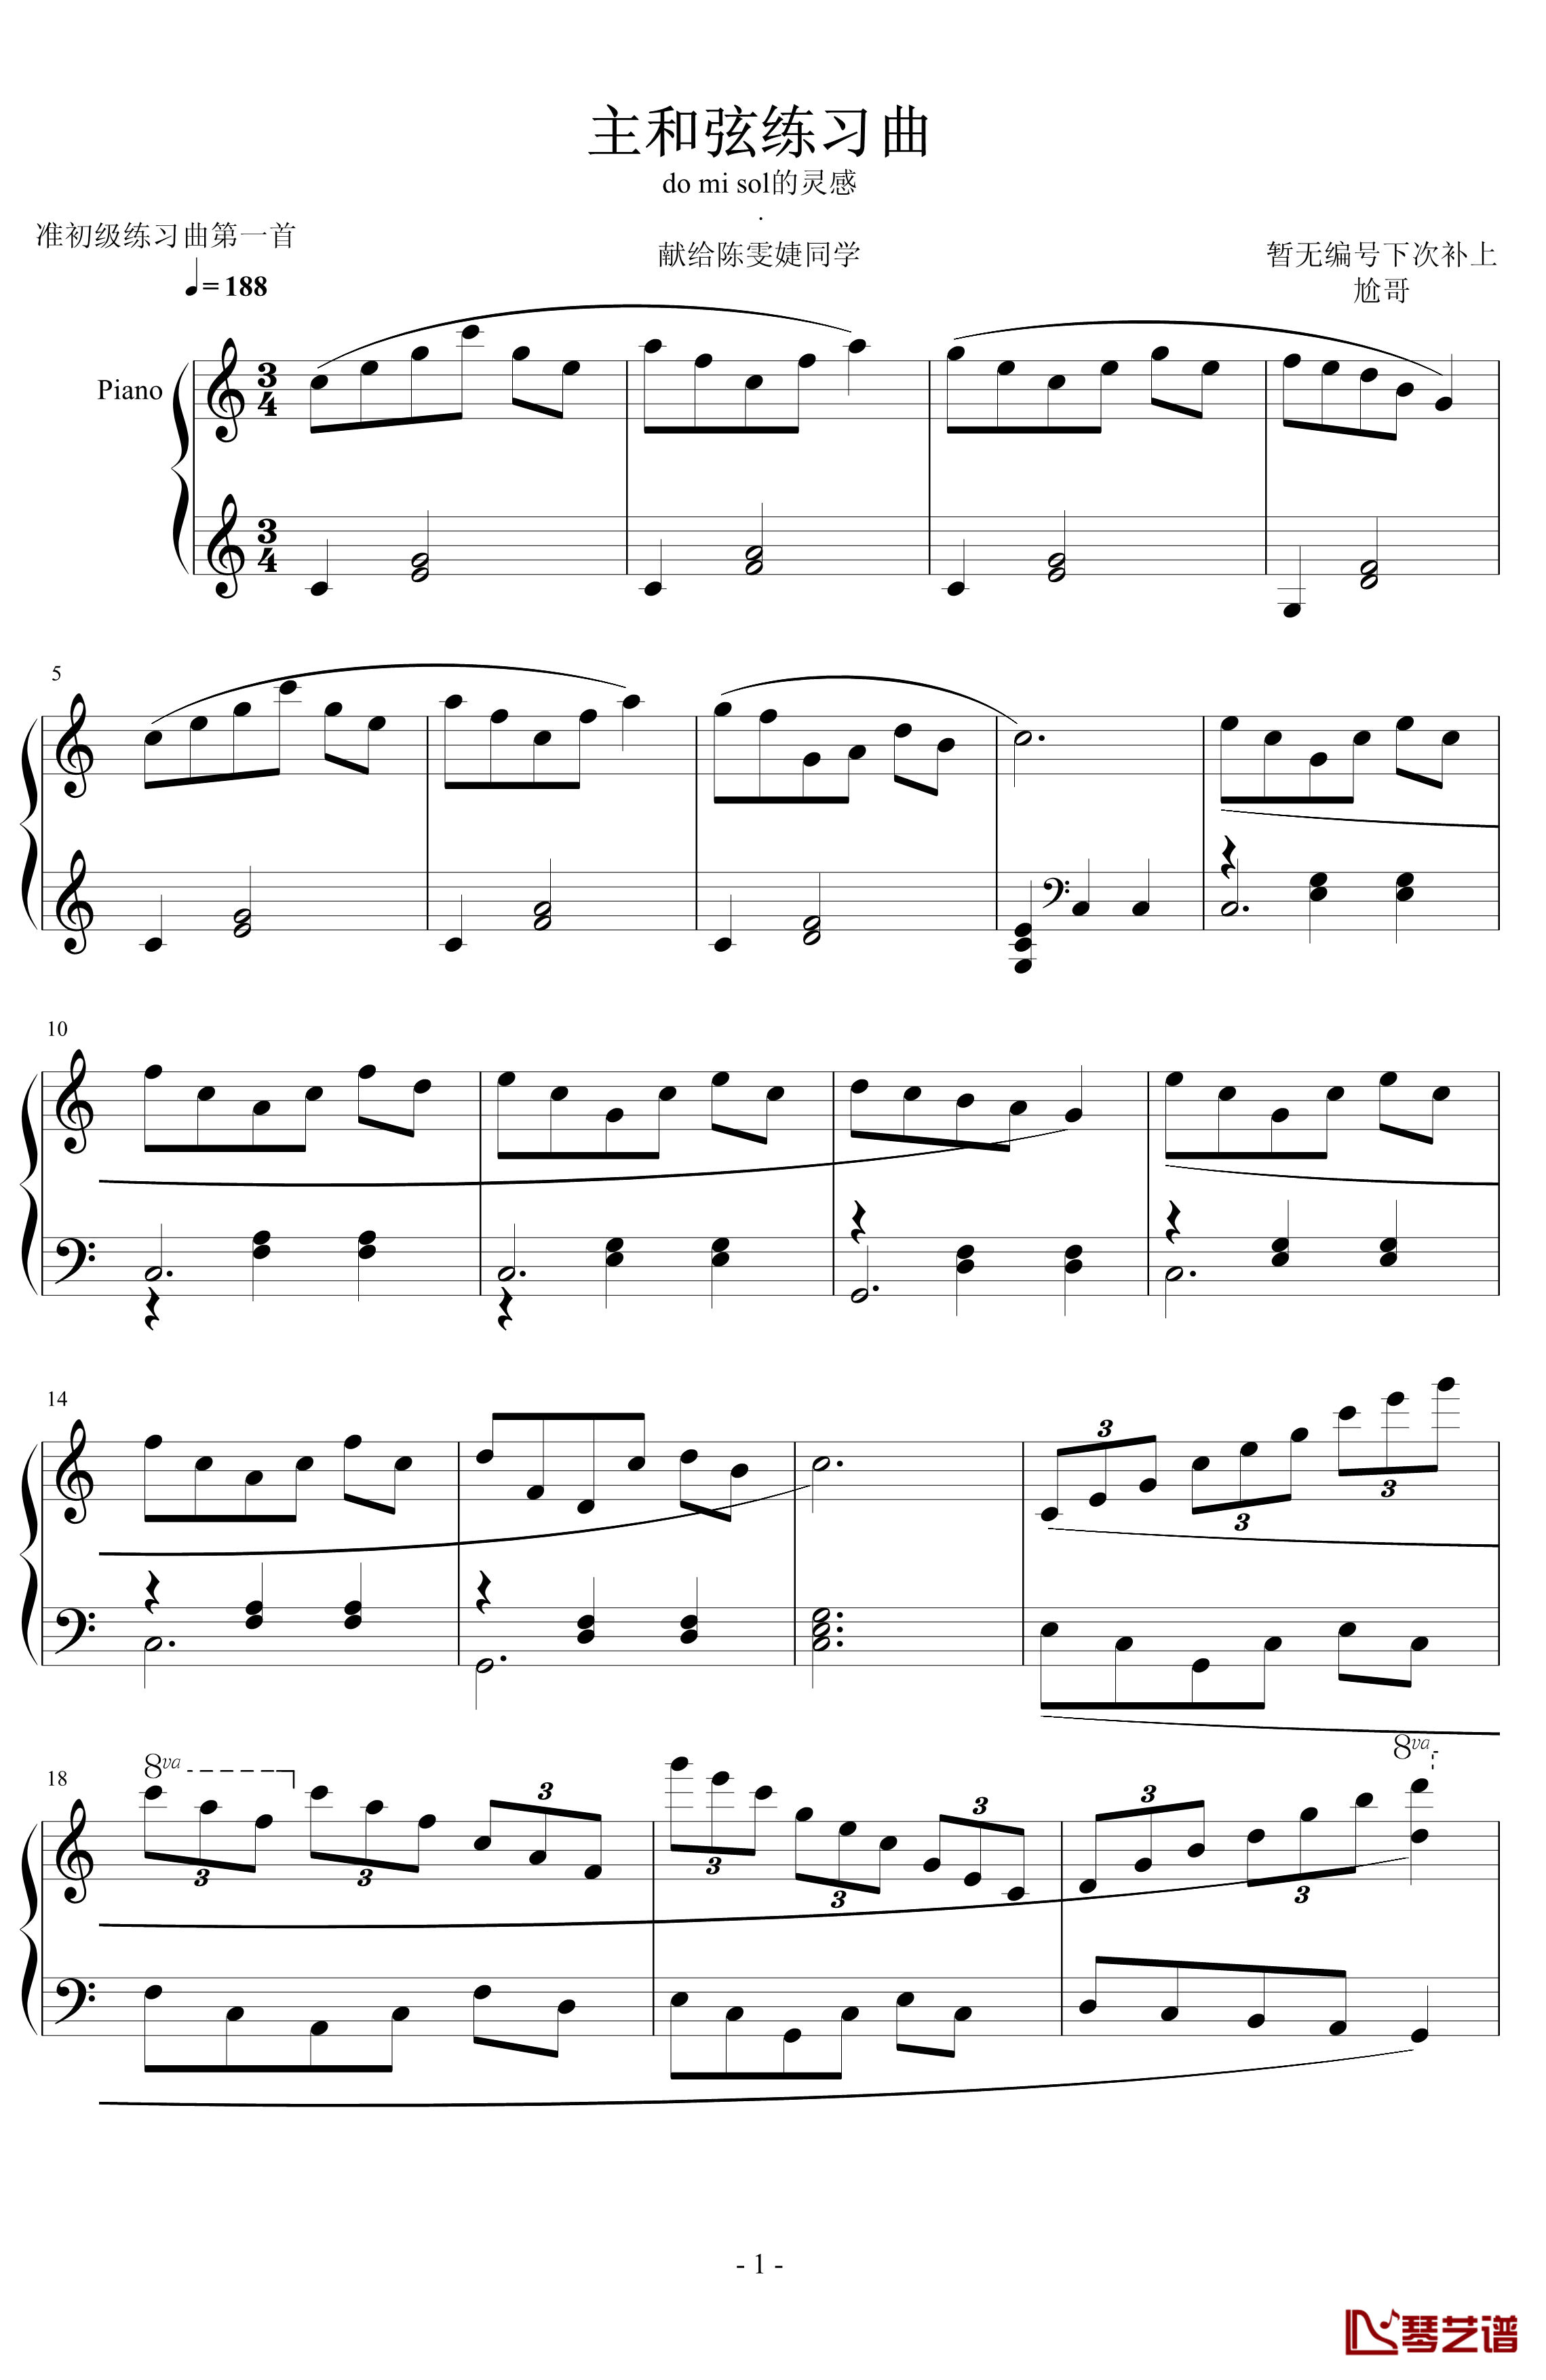 准练习曲第一首钢琴谱-尬哥1